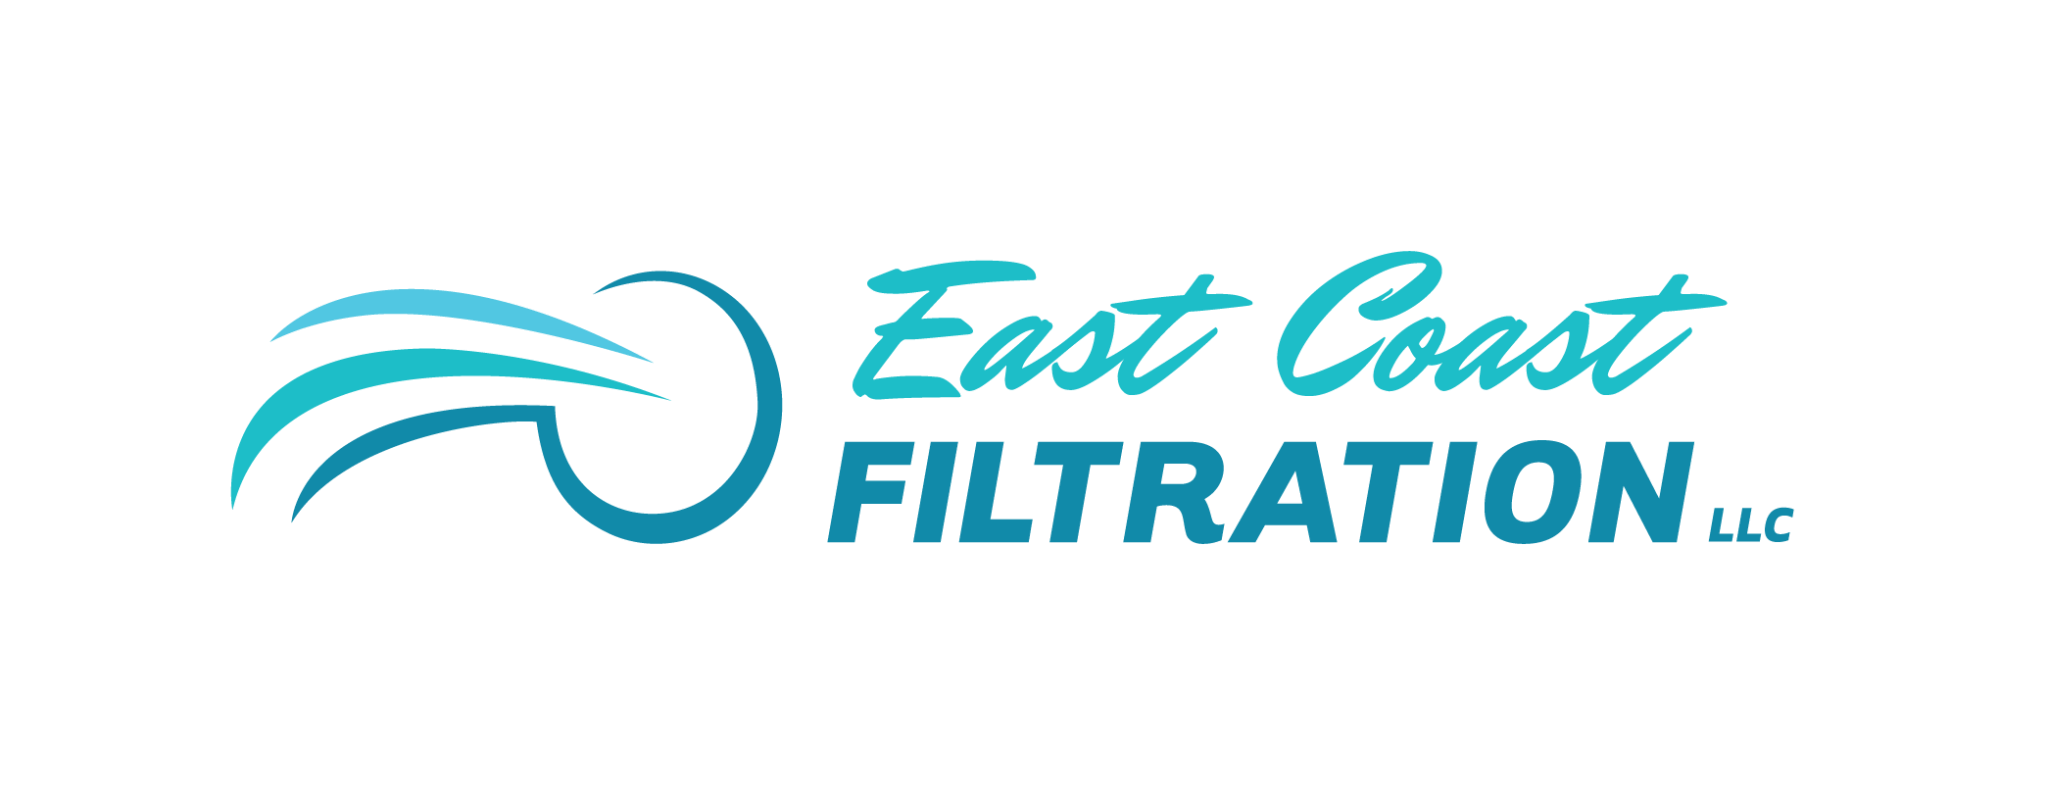 East Coast Filtration color logo